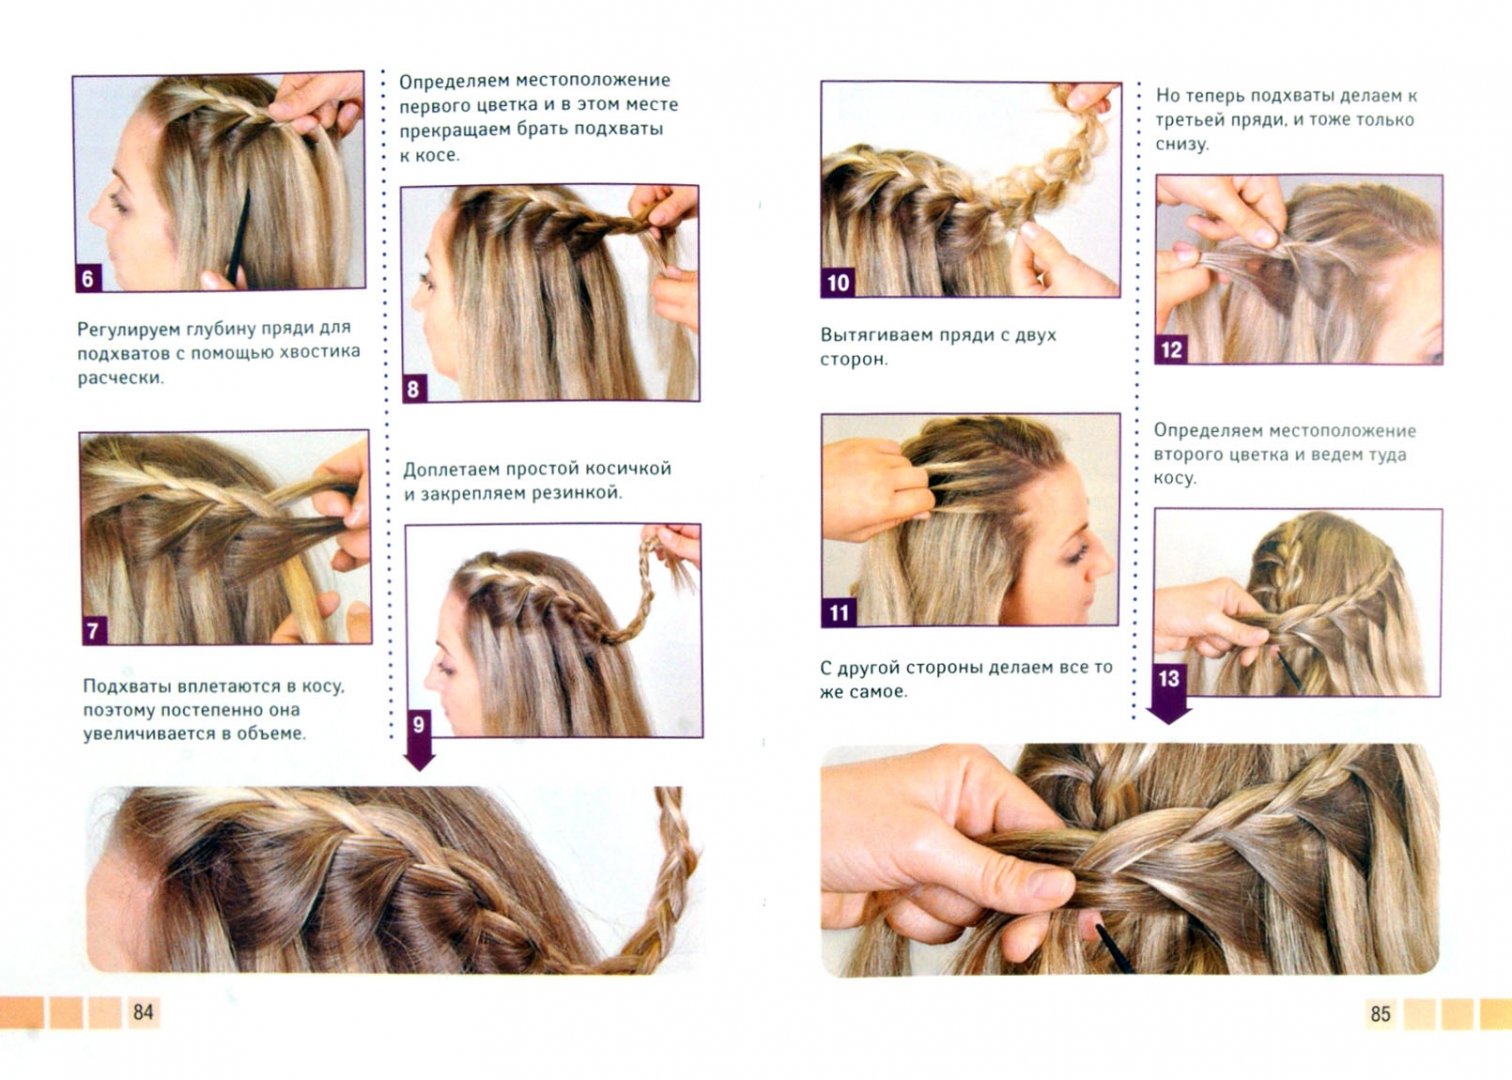 Плетение кос на короткие волосы - пошаговое фото для начинающих